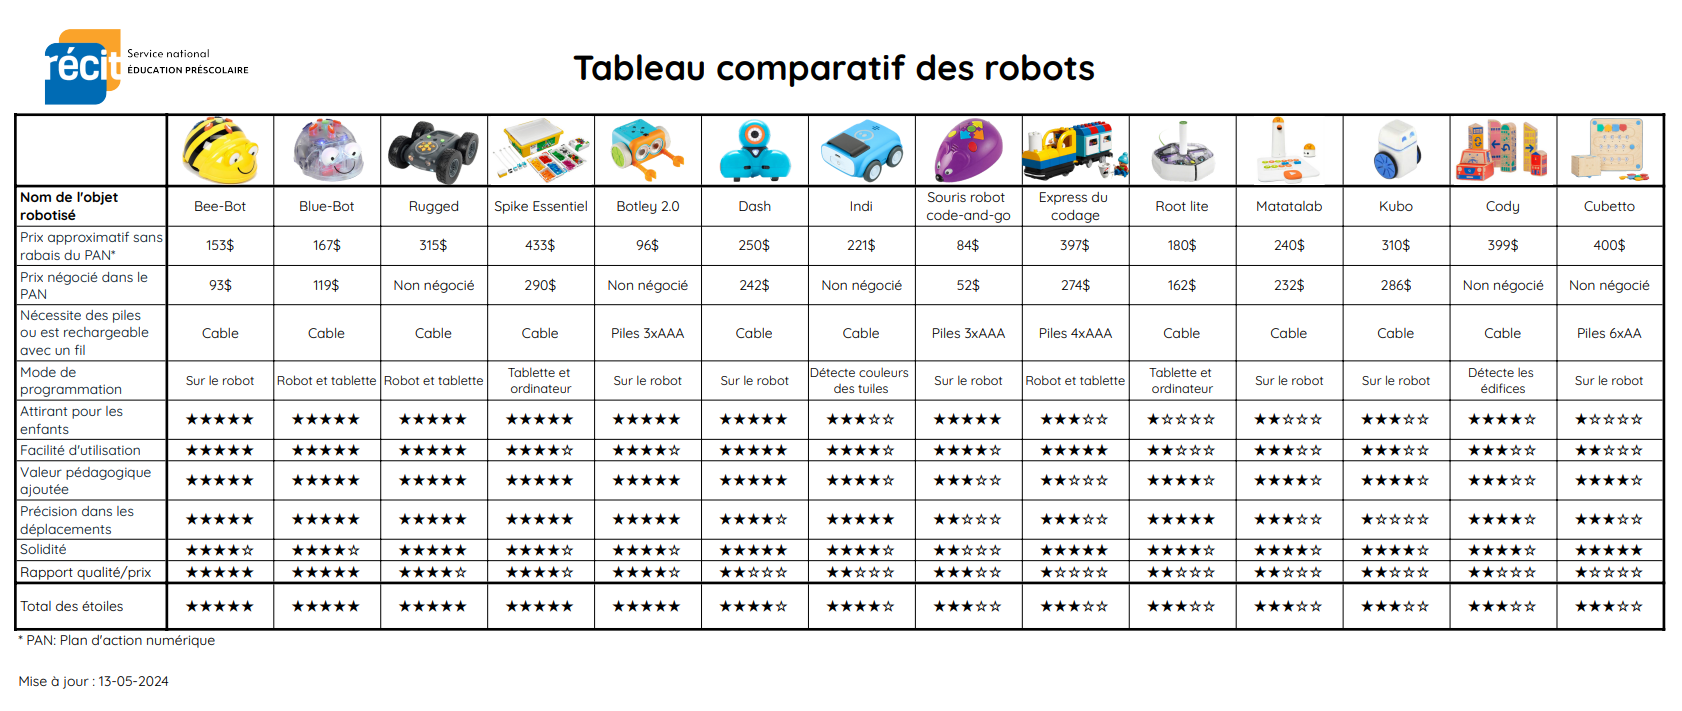 Tableau comparatif des robots